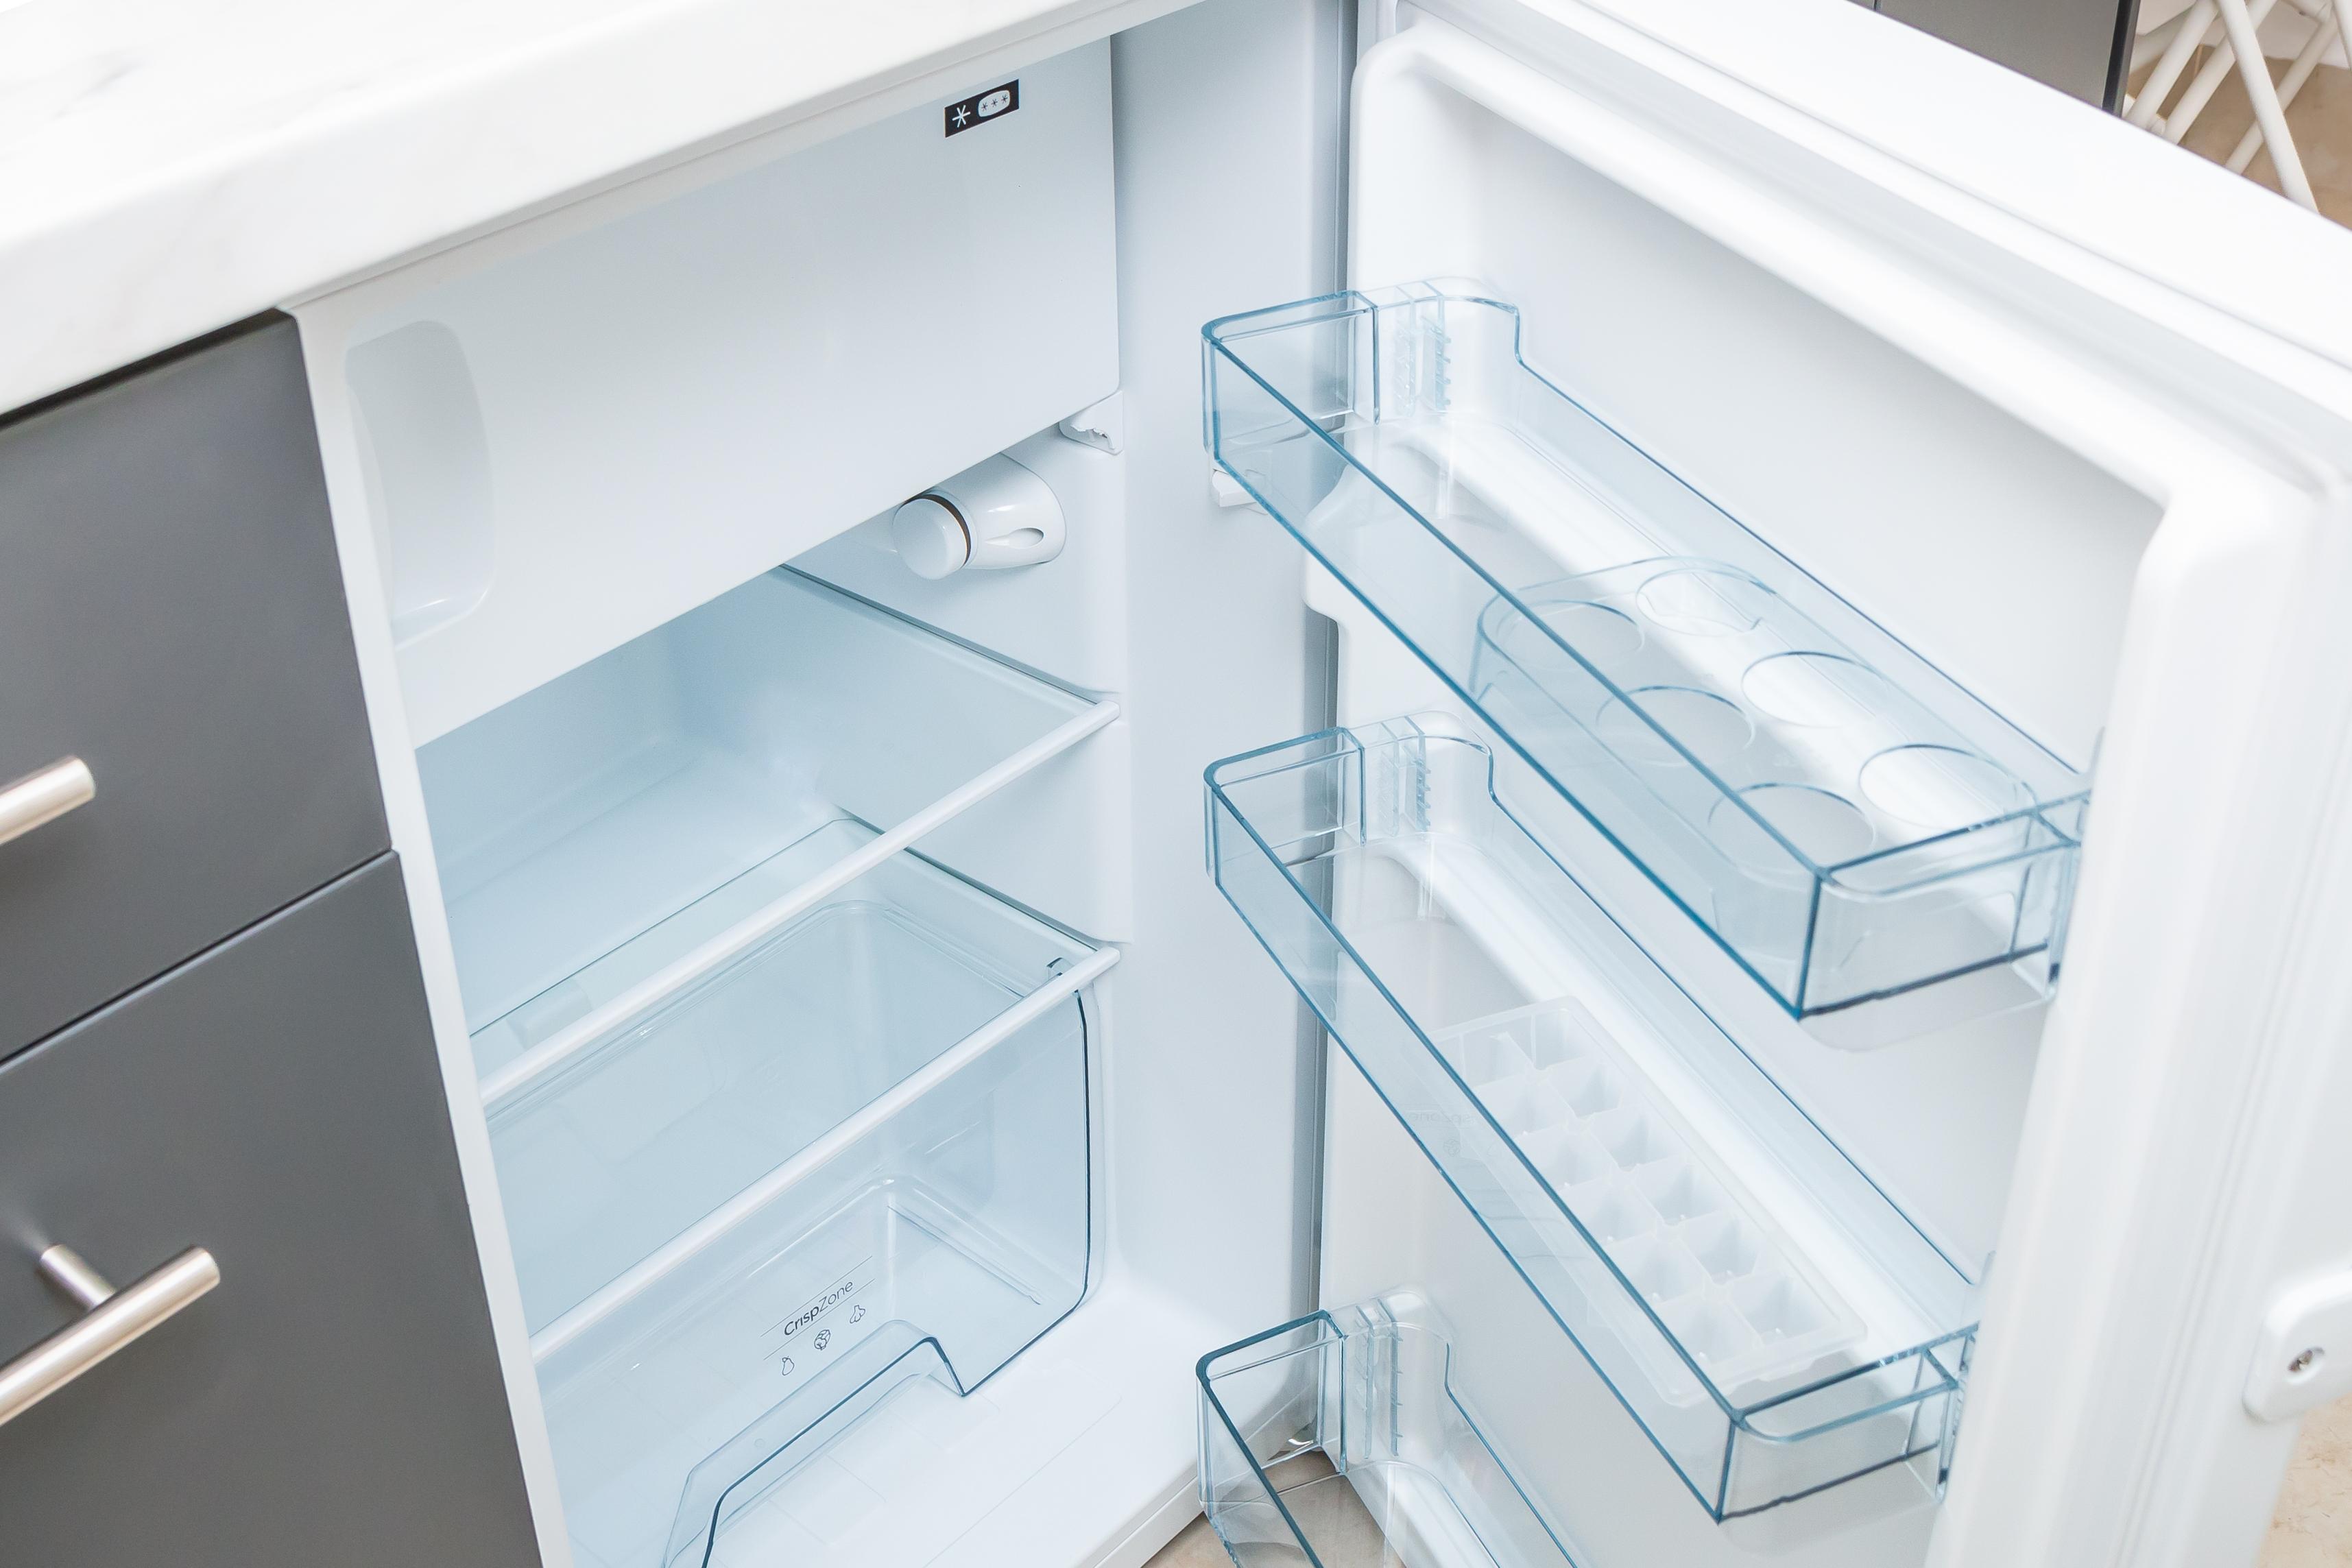 Avant de mettre en service un nouveau réfrigérateur, il y a quelques points à prendre en considération. 